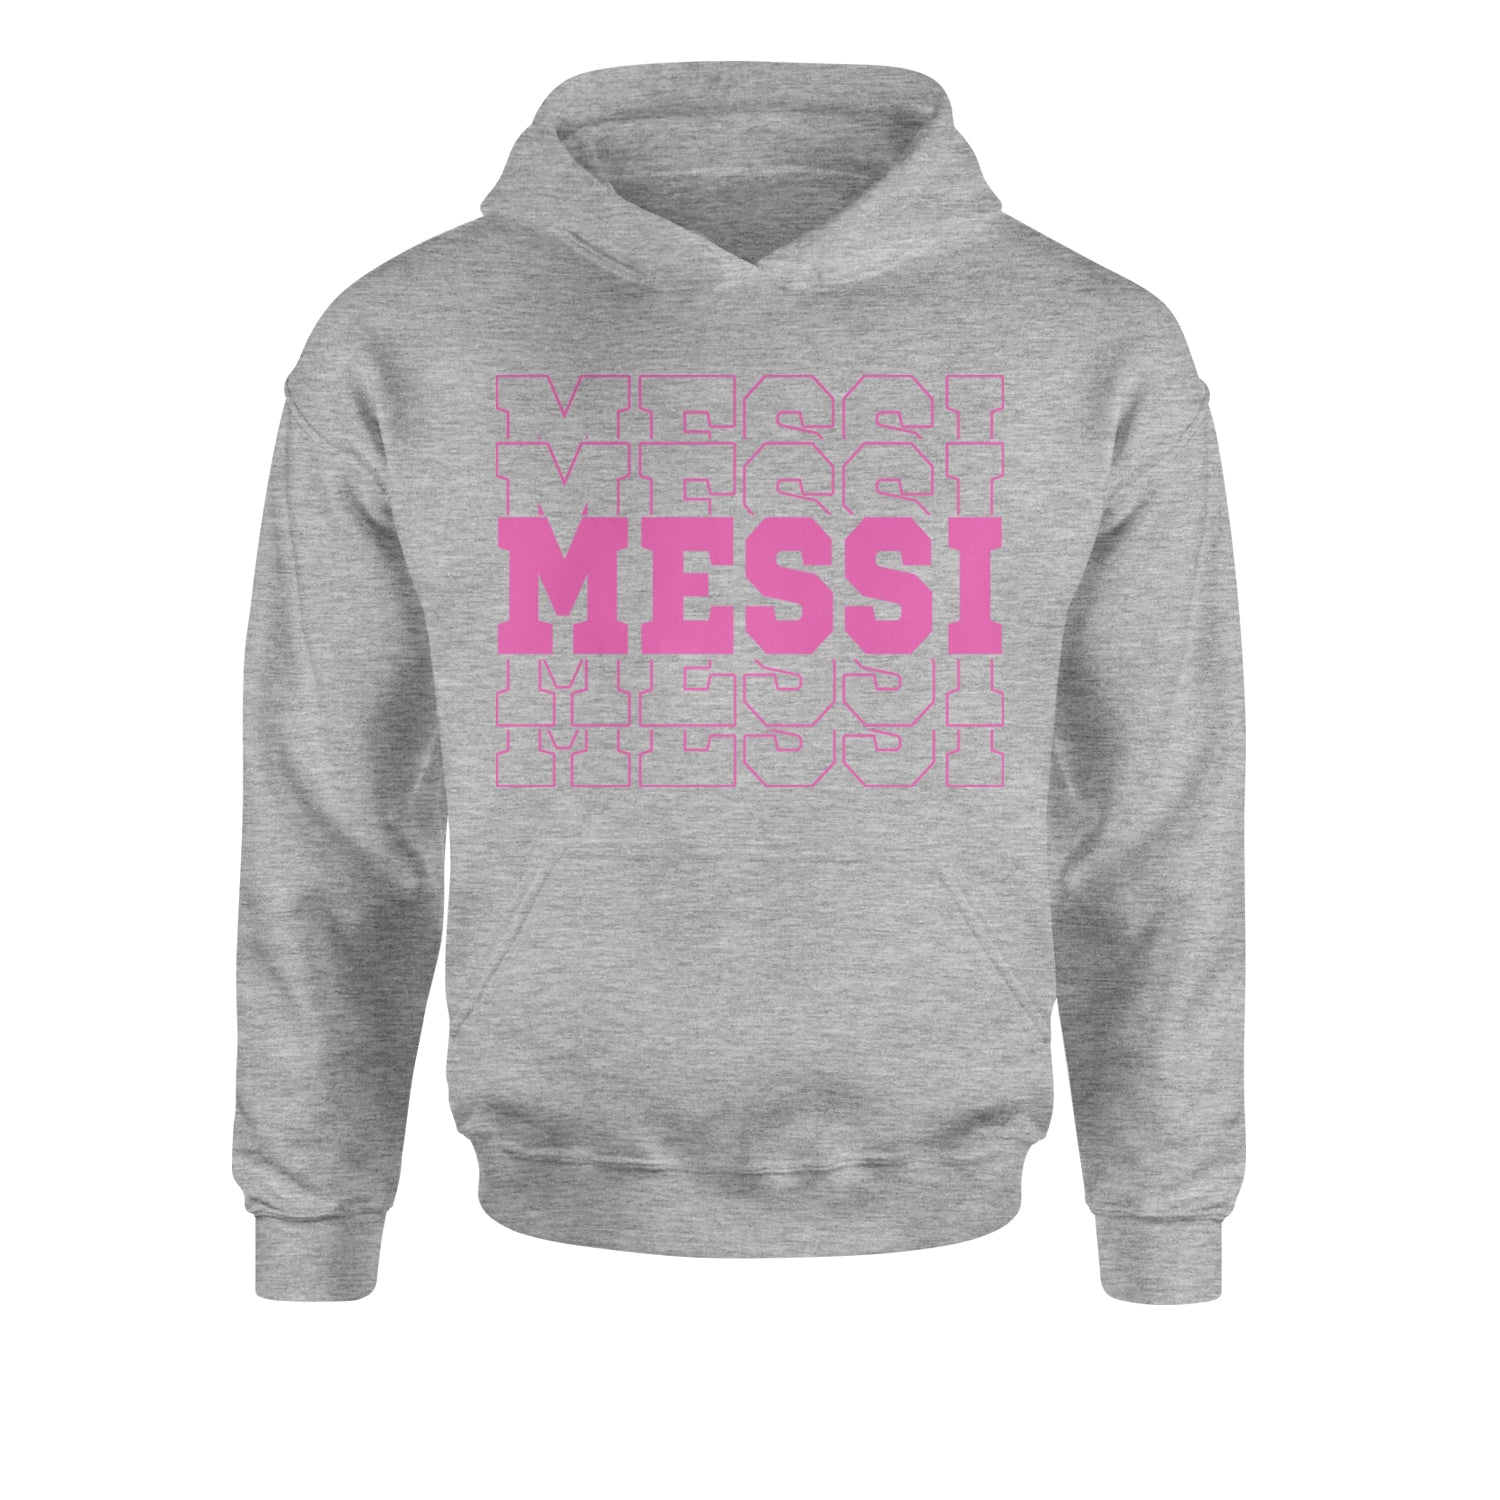 Messi Miami Futbol Youth-Sized Hoodie